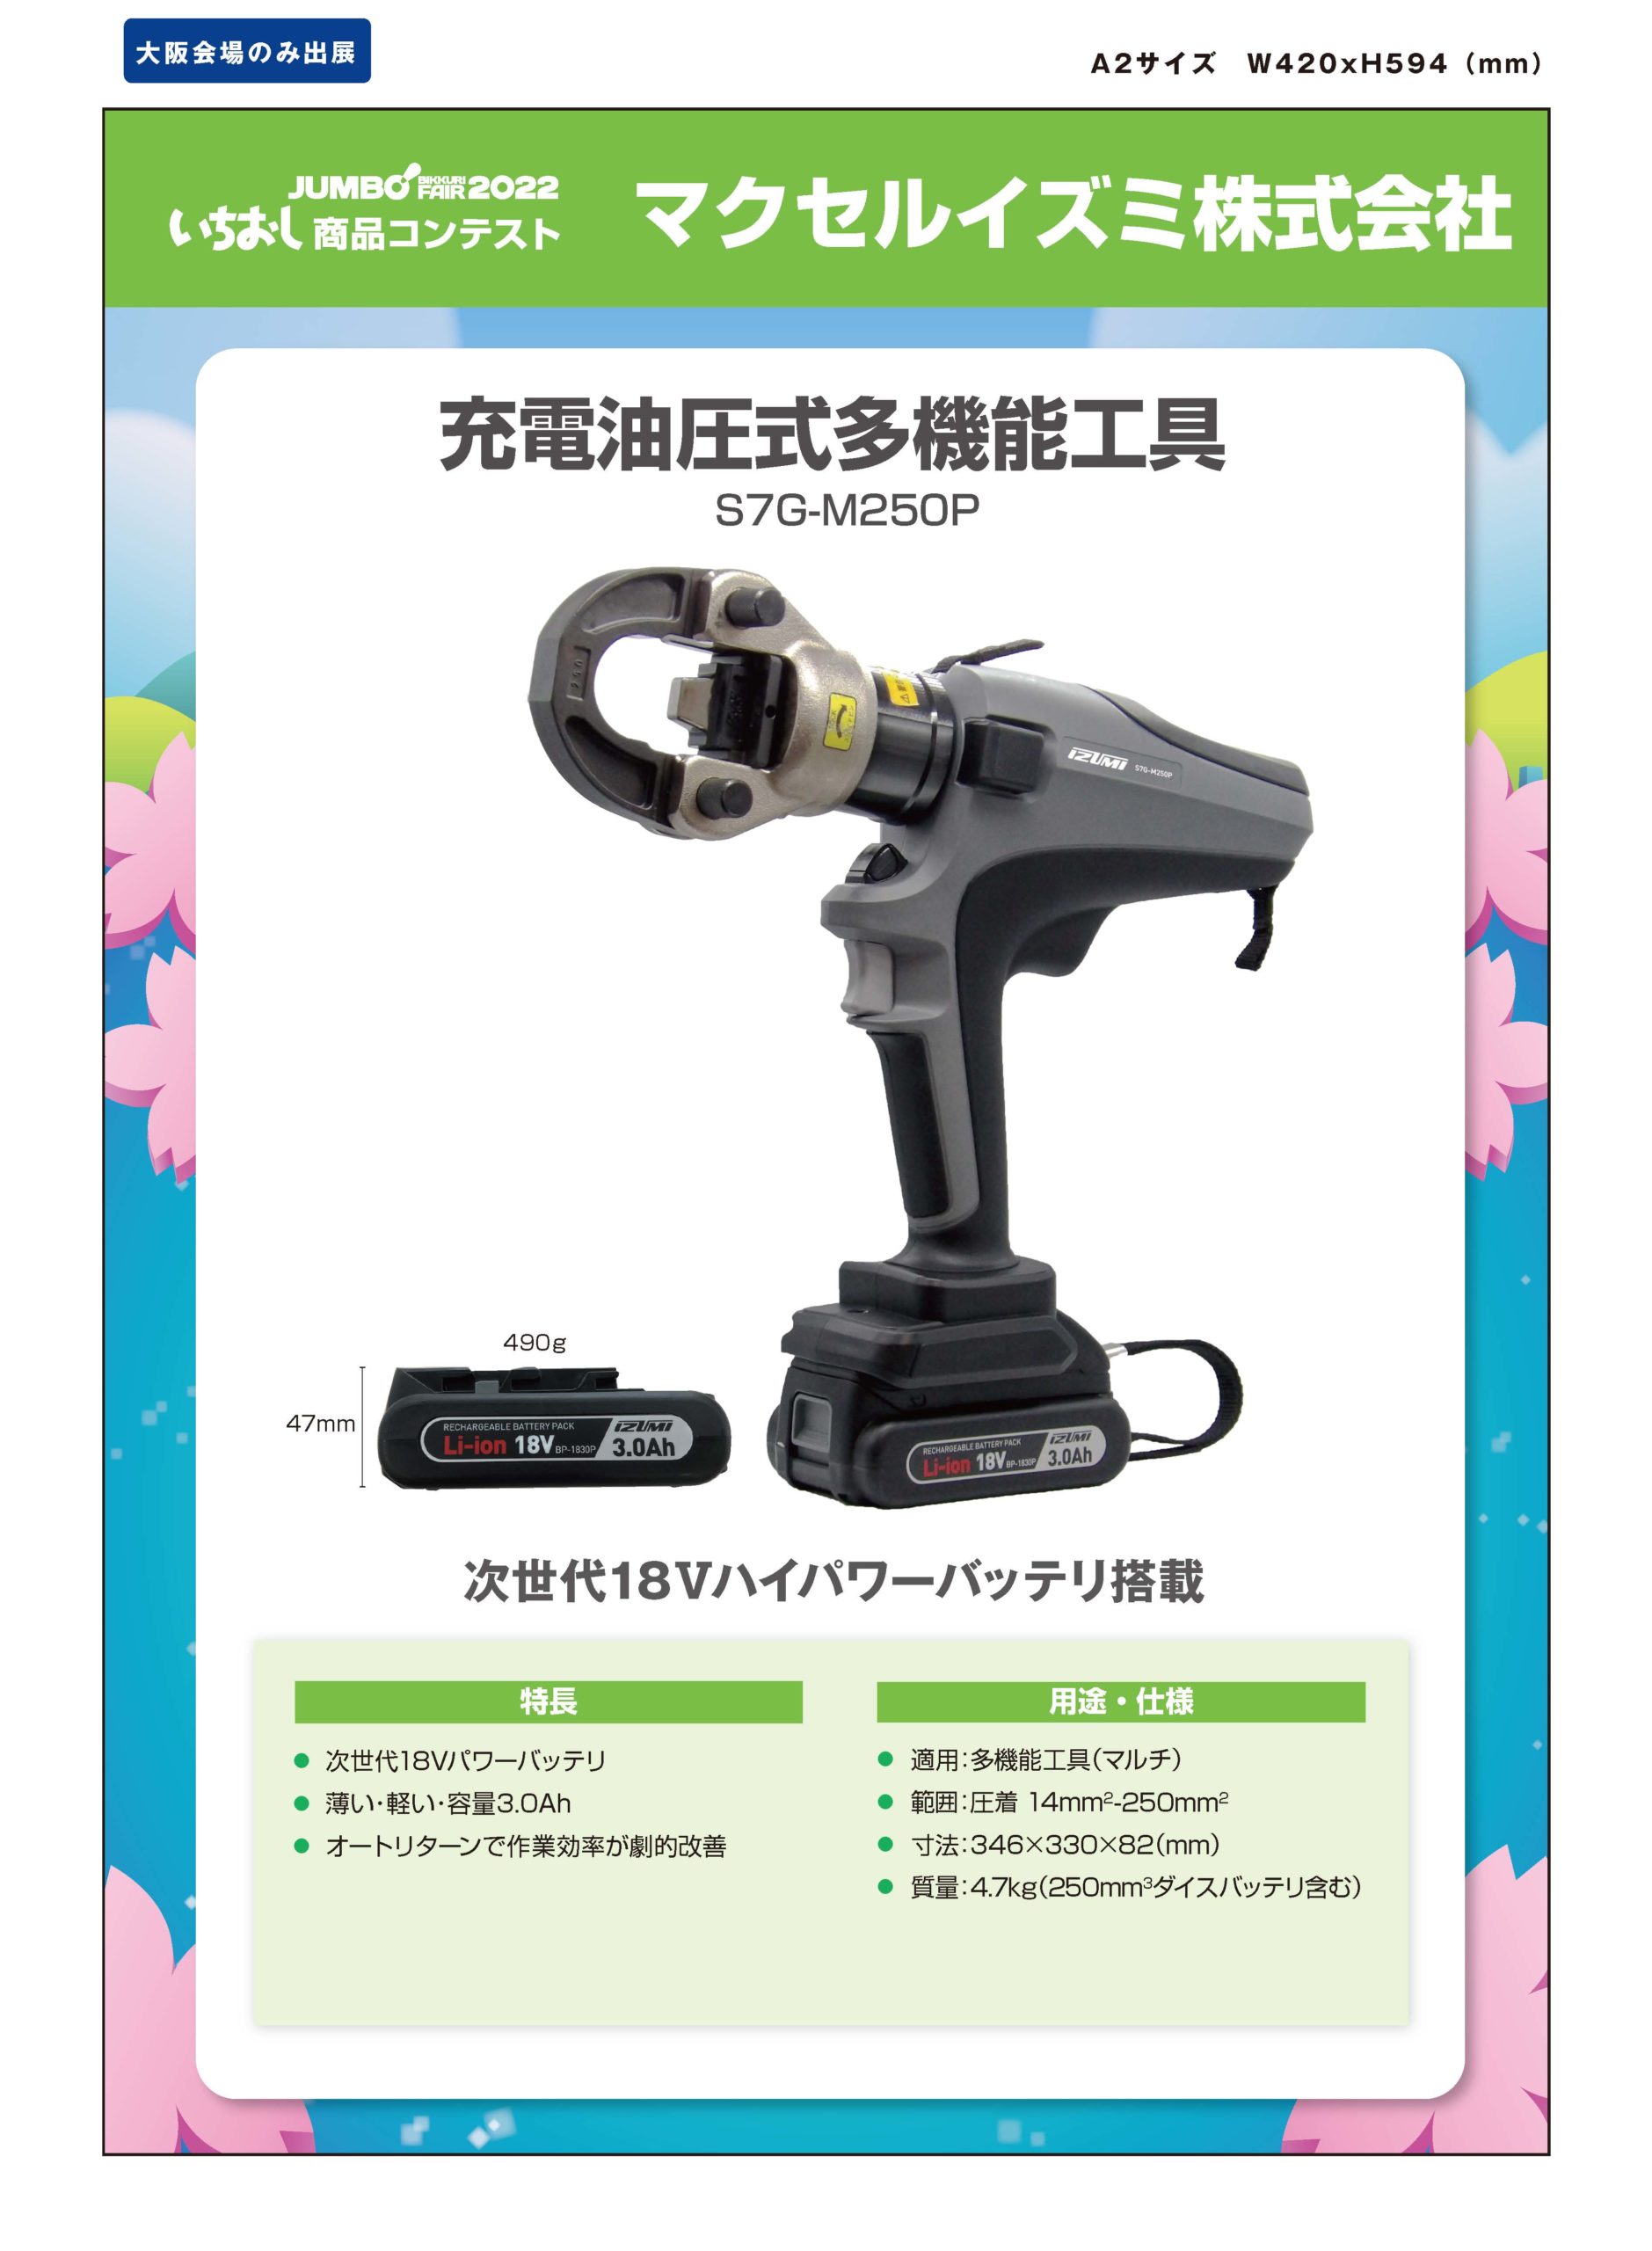 ミヤナガ PCSM220C(220×130) スーパーメタルコア カッター 人気カテゴリー DIY、工具